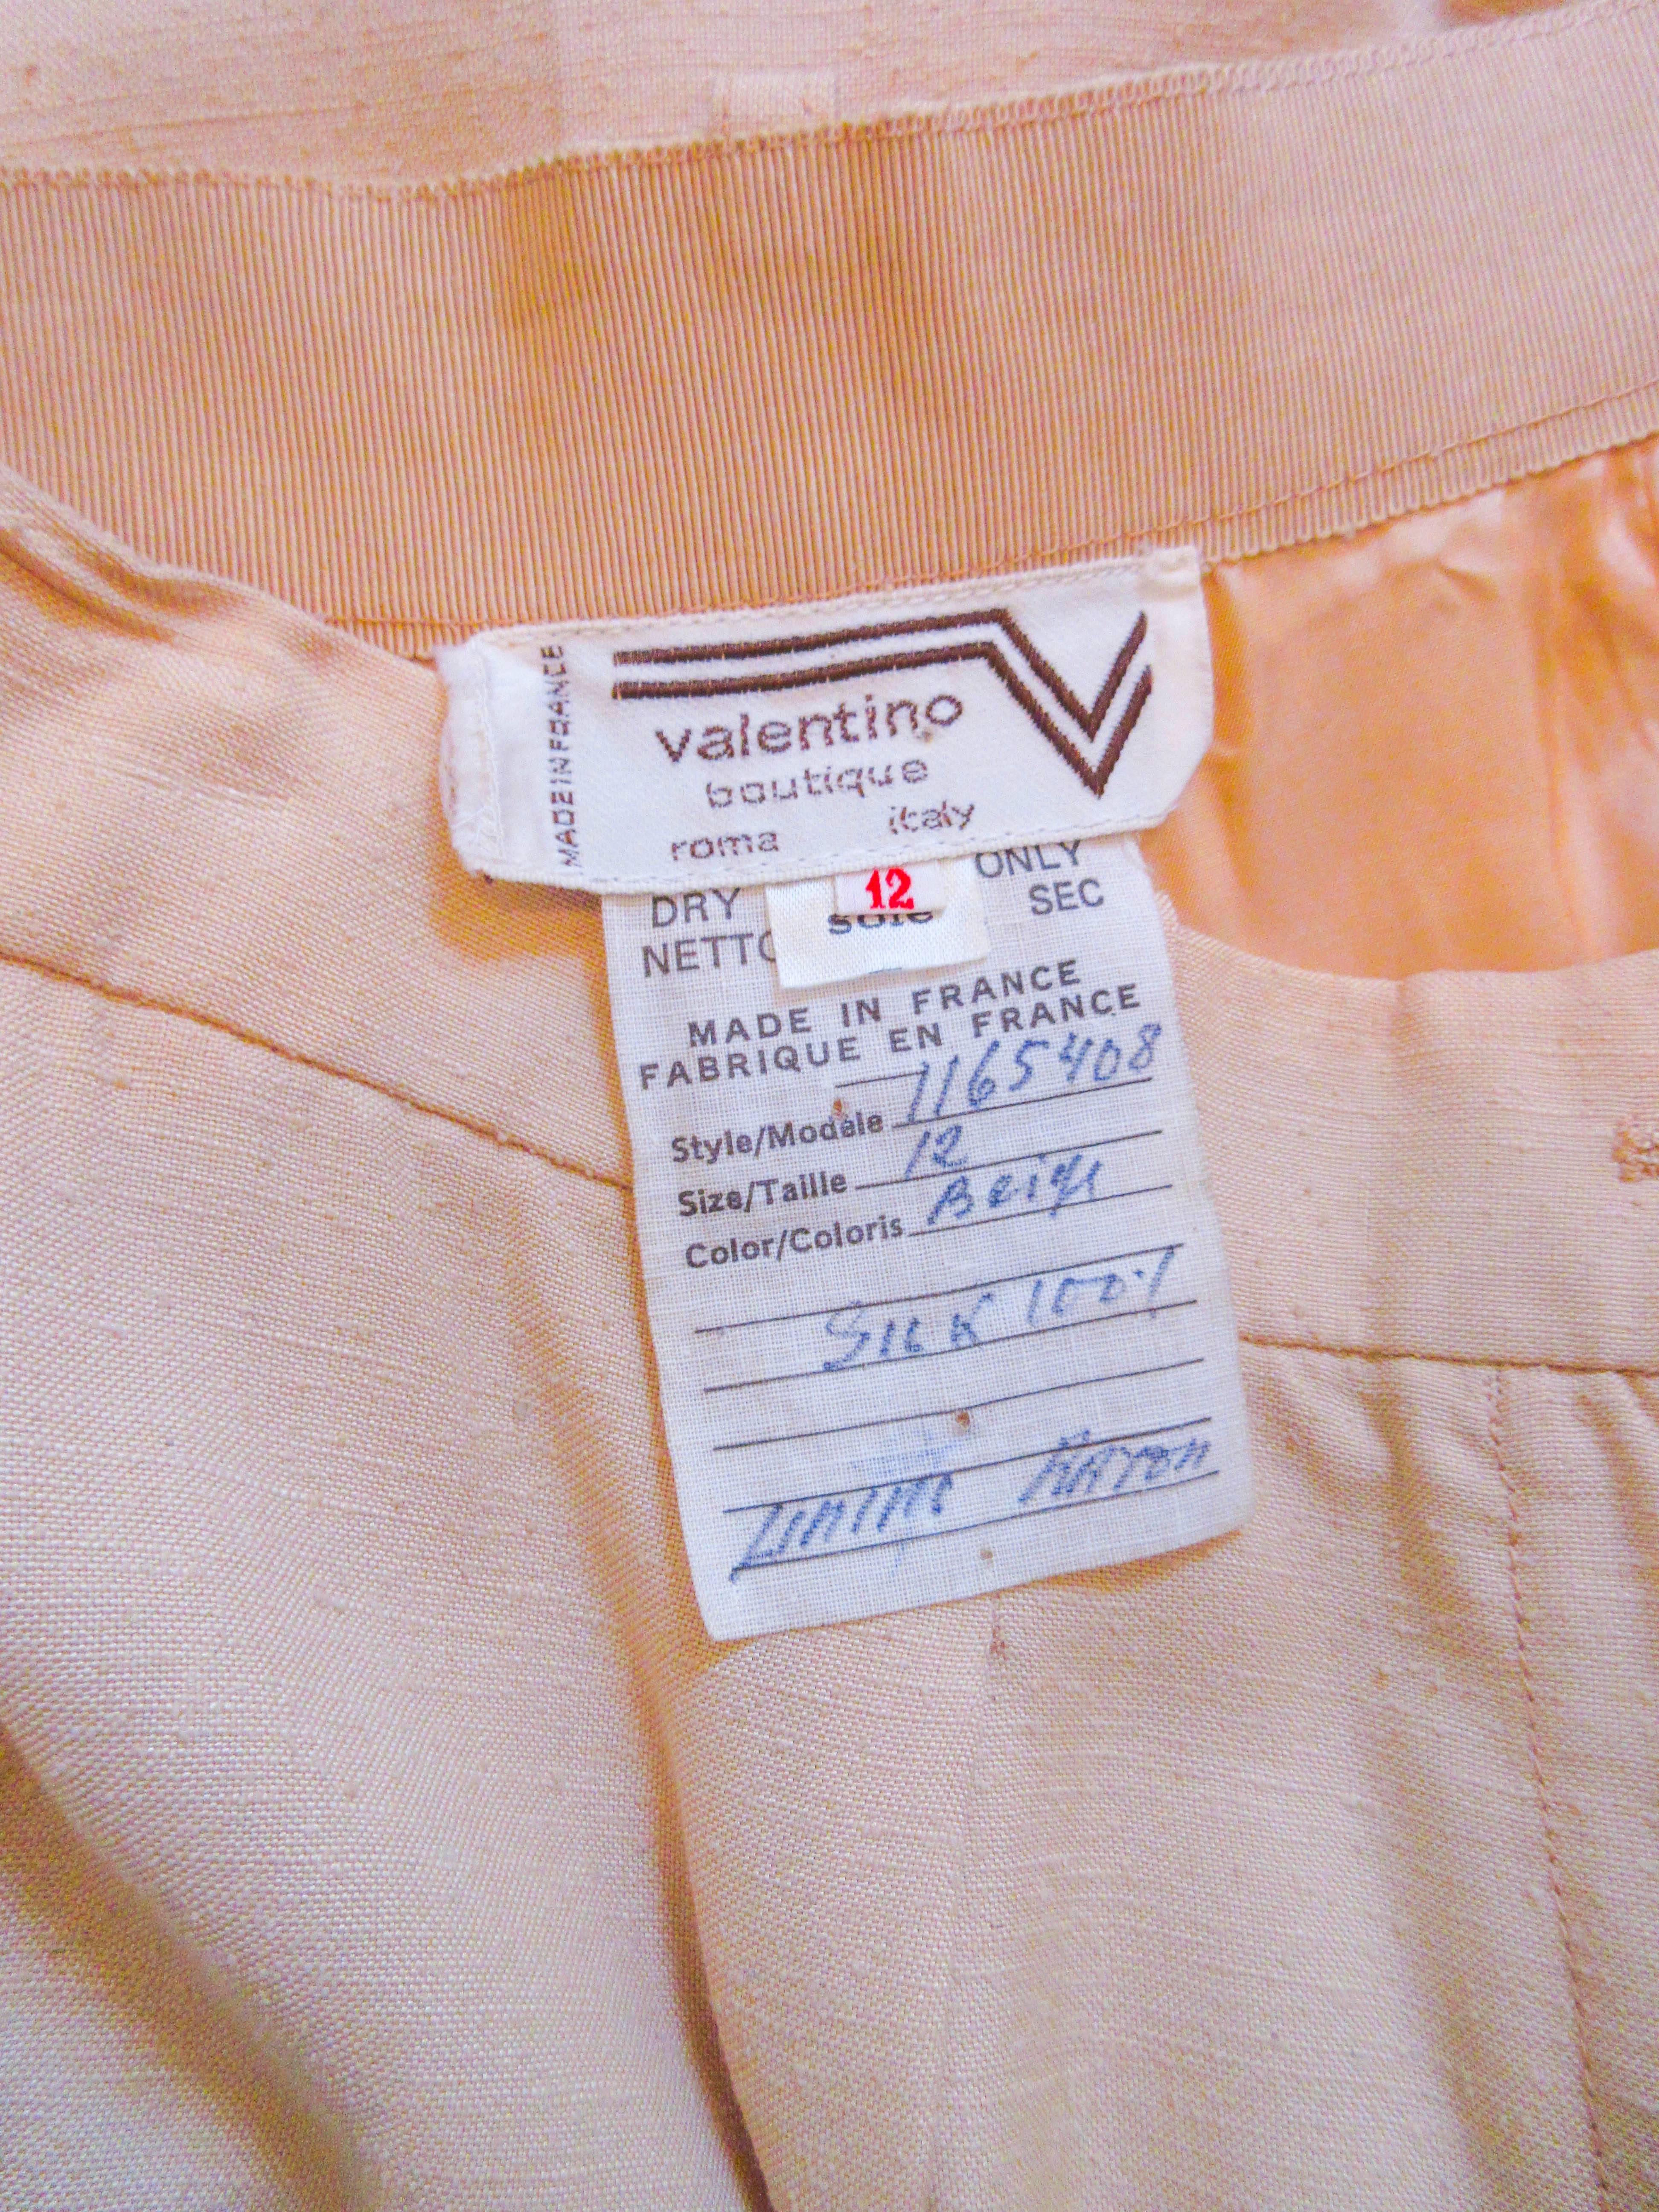 VALENTINO Khaki Utility Style Safari Trouser Size 27 3